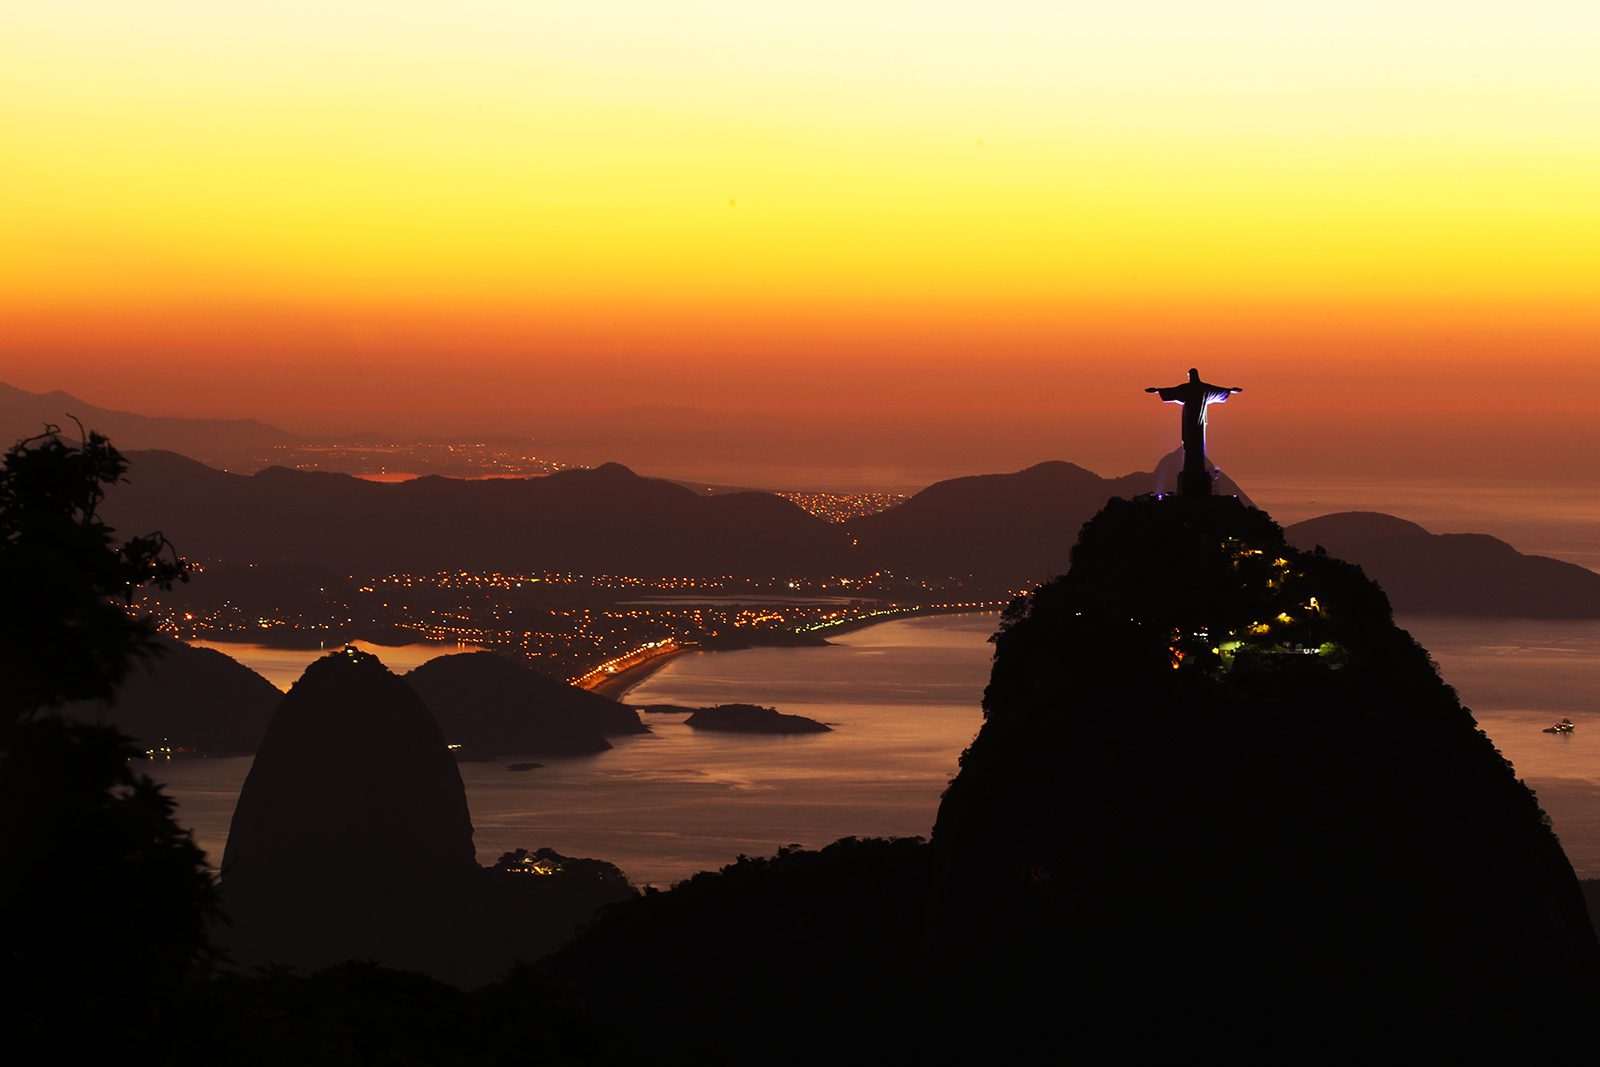 Turismo na natureza em parques: quais as perspectivas de futuro para o Brasil